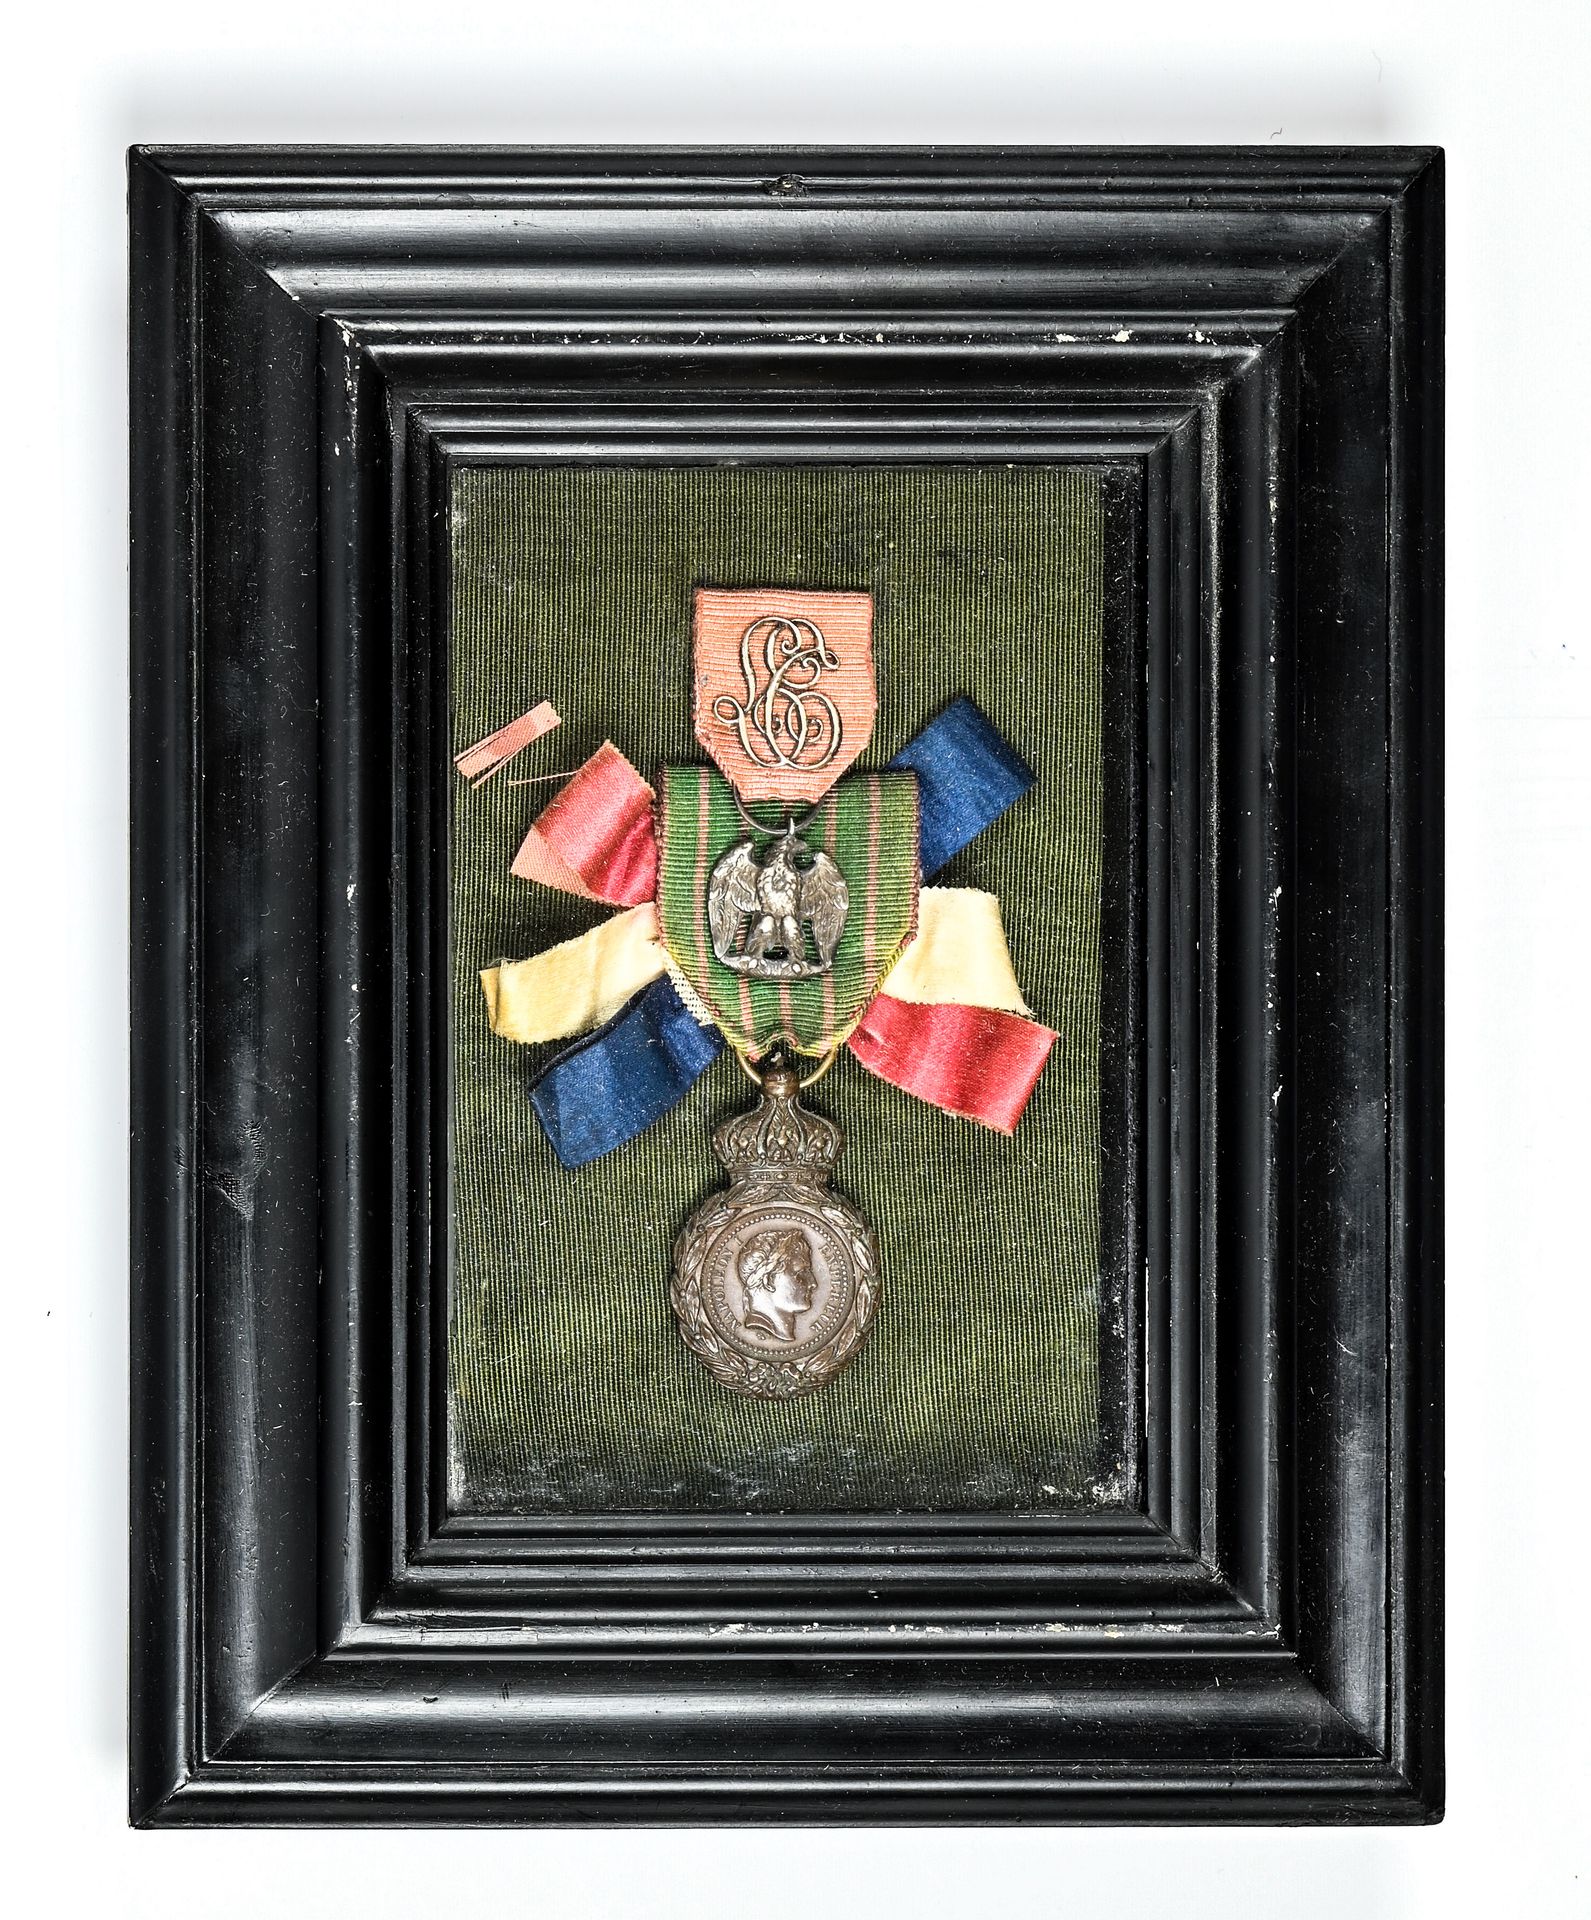 FRANCE, 法国。

圣赫勒拿勋章。



框架包括圣赫勒拿勋章，"帝国军队碎片 "兄弟勋章，绶带上有L-E拥护。

非常好。(2)